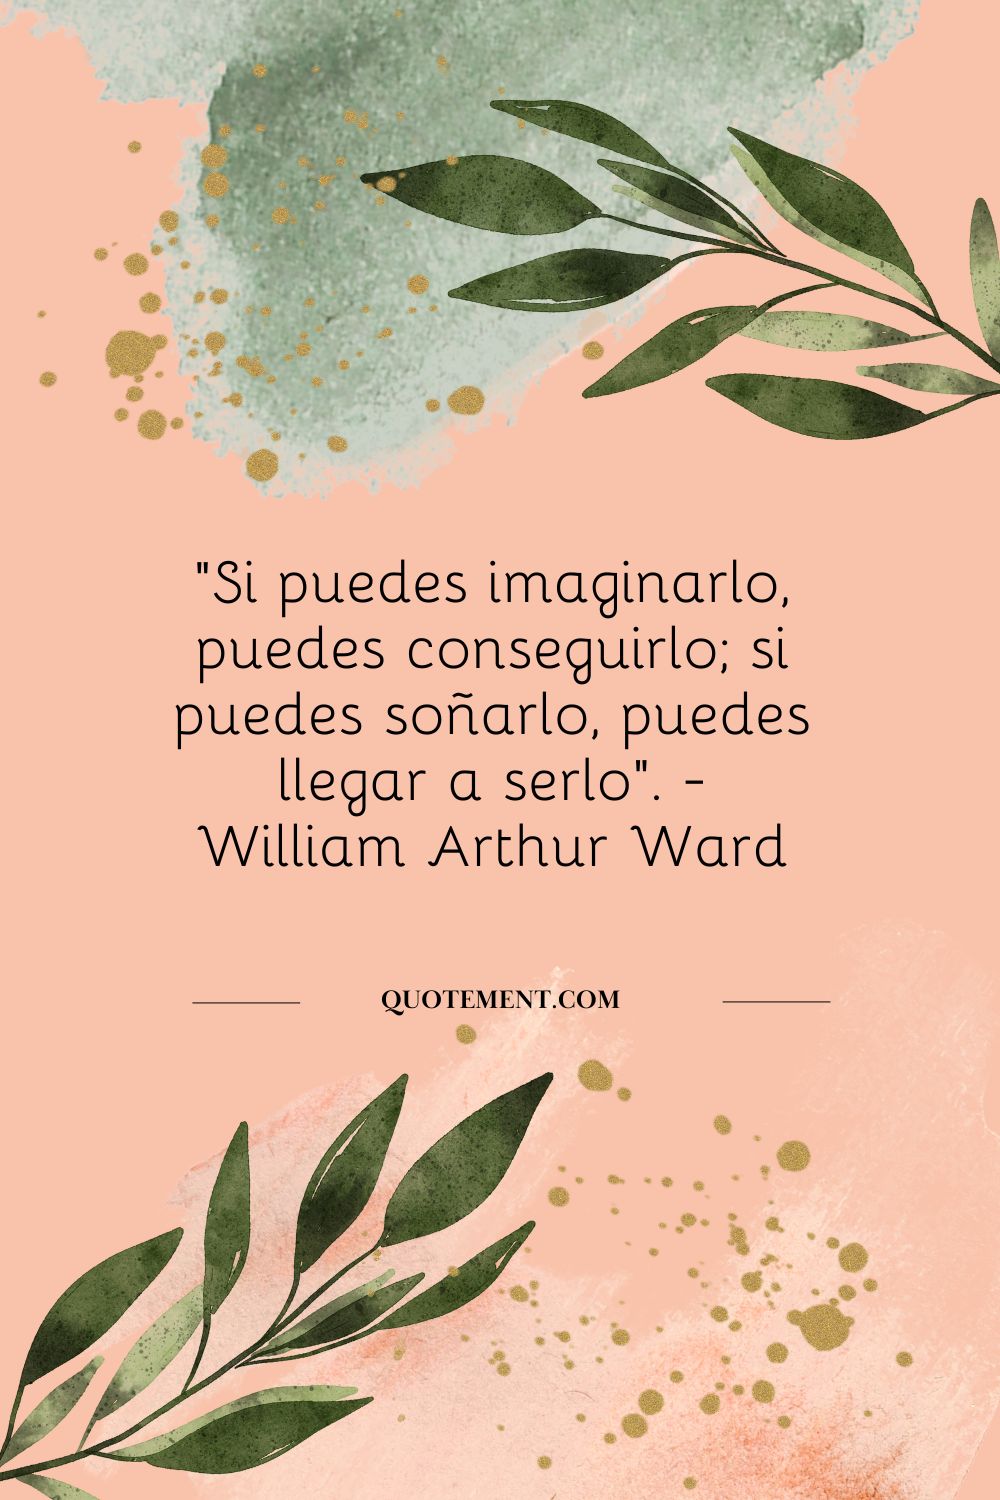 "Si puedes imaginarlo, puedes conseguirlo; si puedes soñarlo, puedes llegar a serlo". - William Arthur Ward